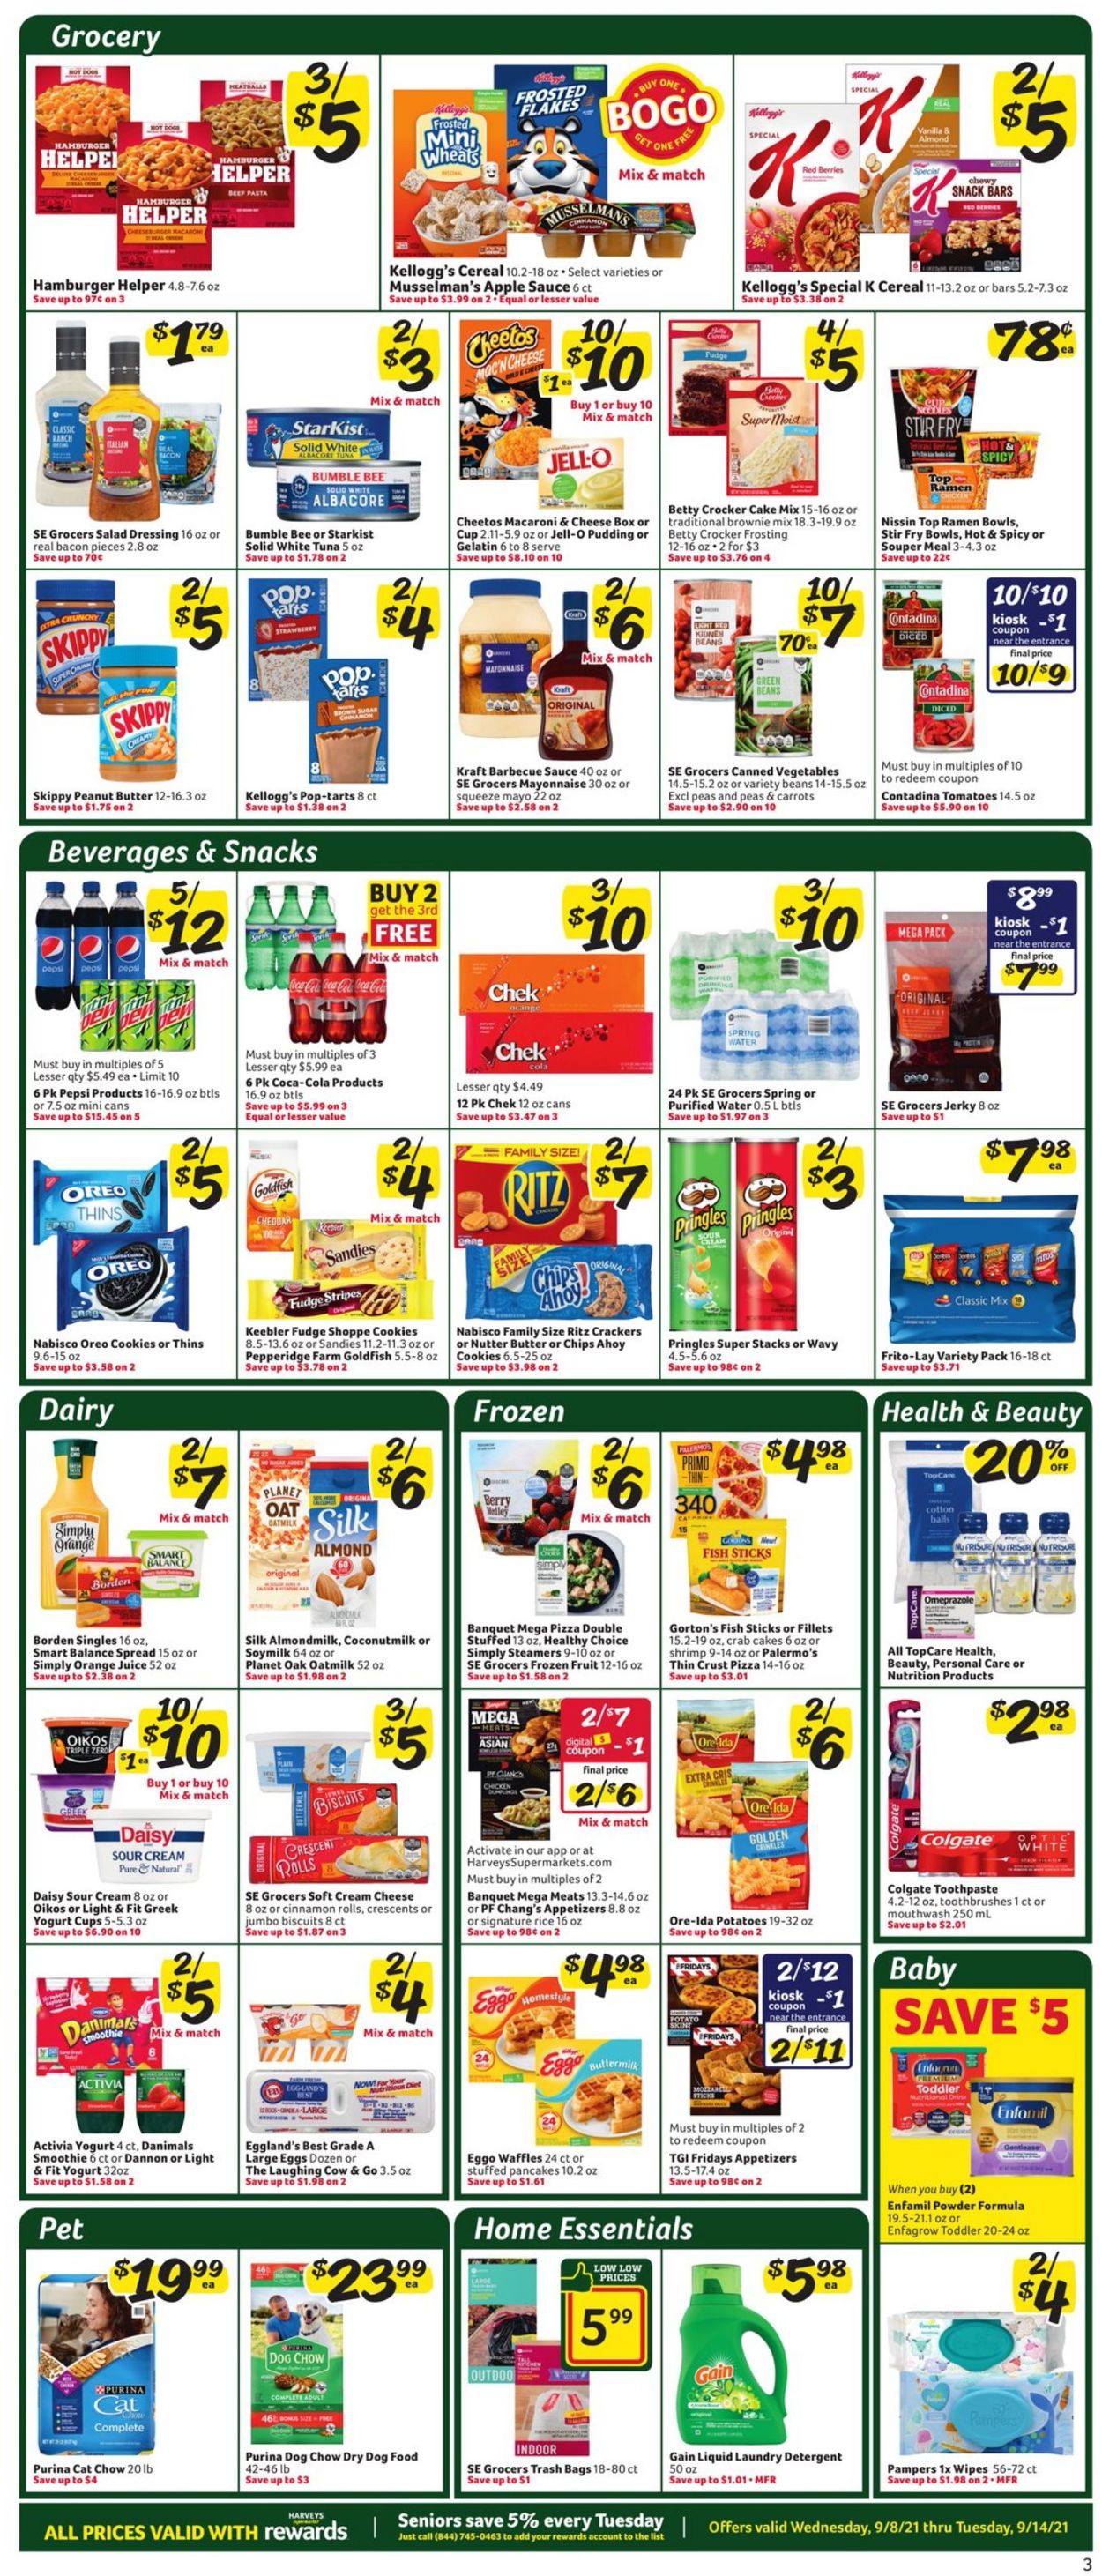 Catalogue Harveys Supermarket from 09/08/2021